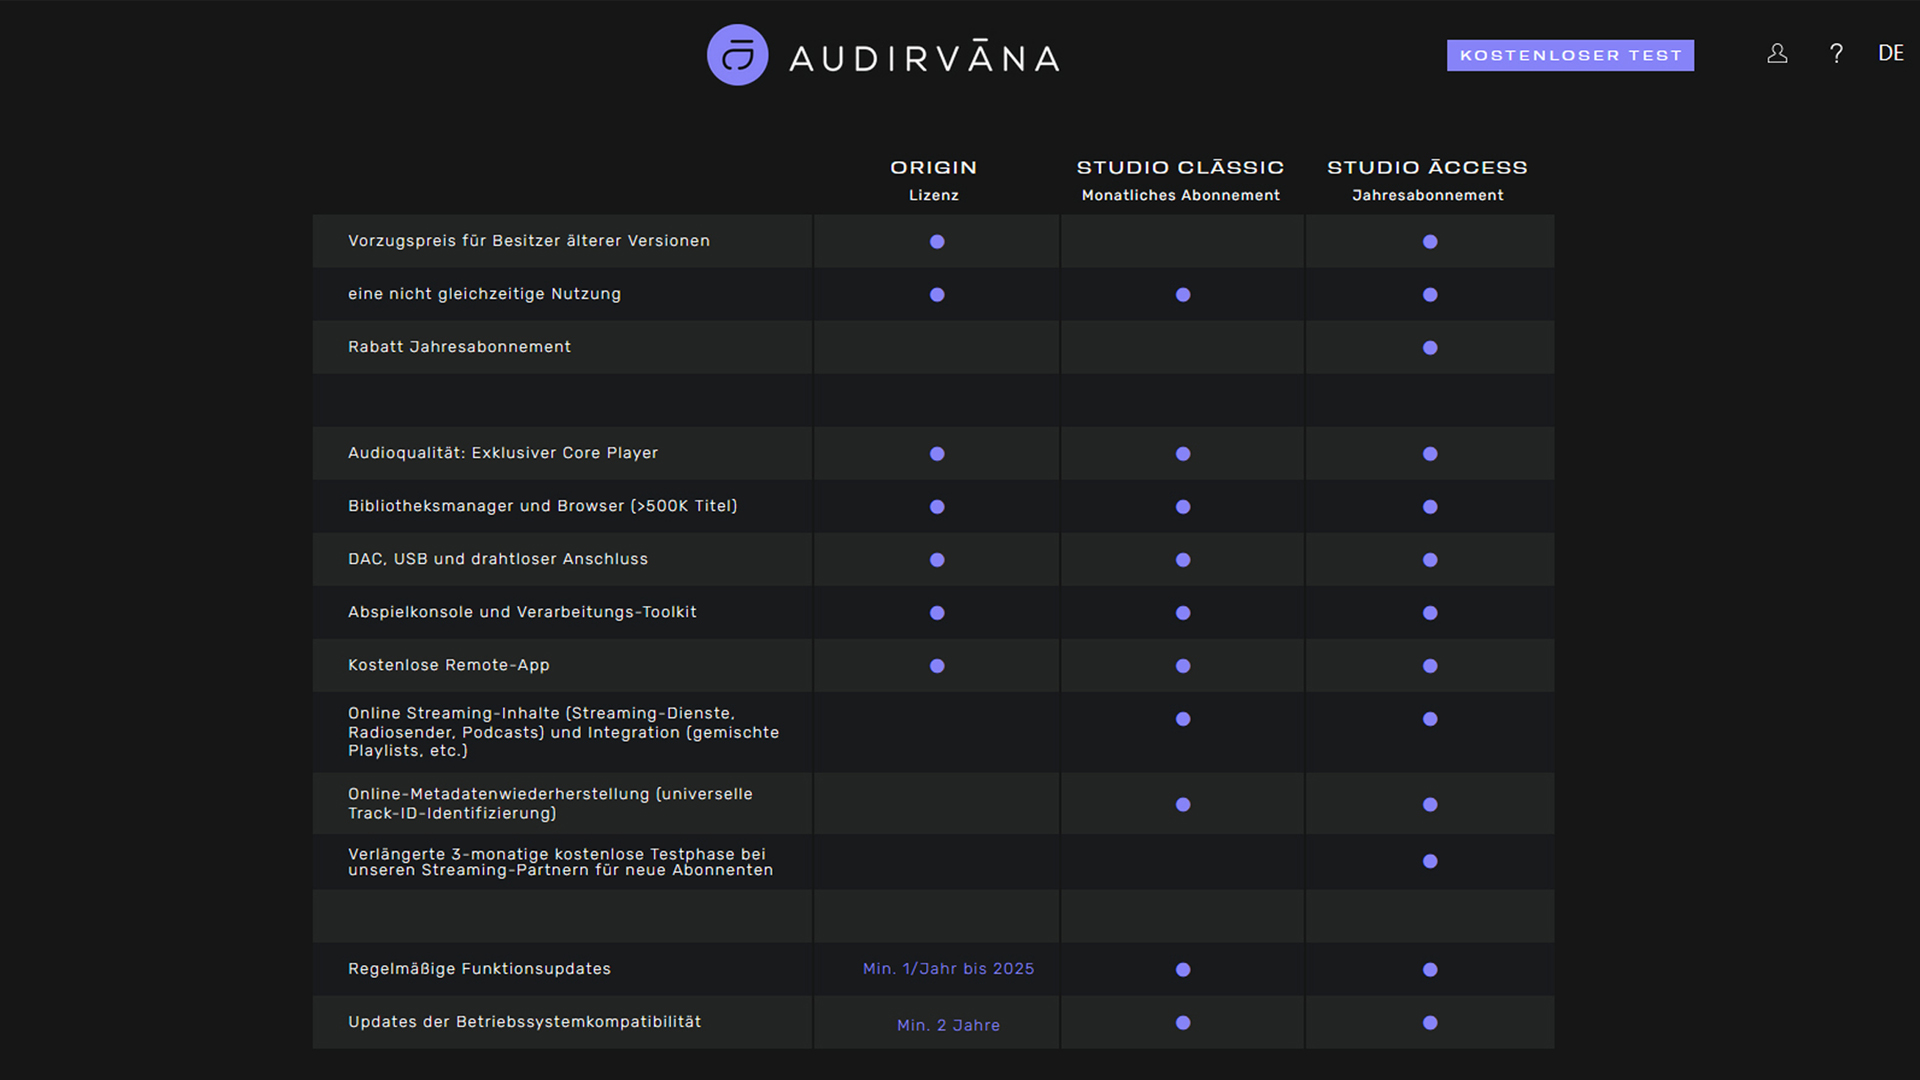 Feature-Vergleich der Audirvana-Versionen